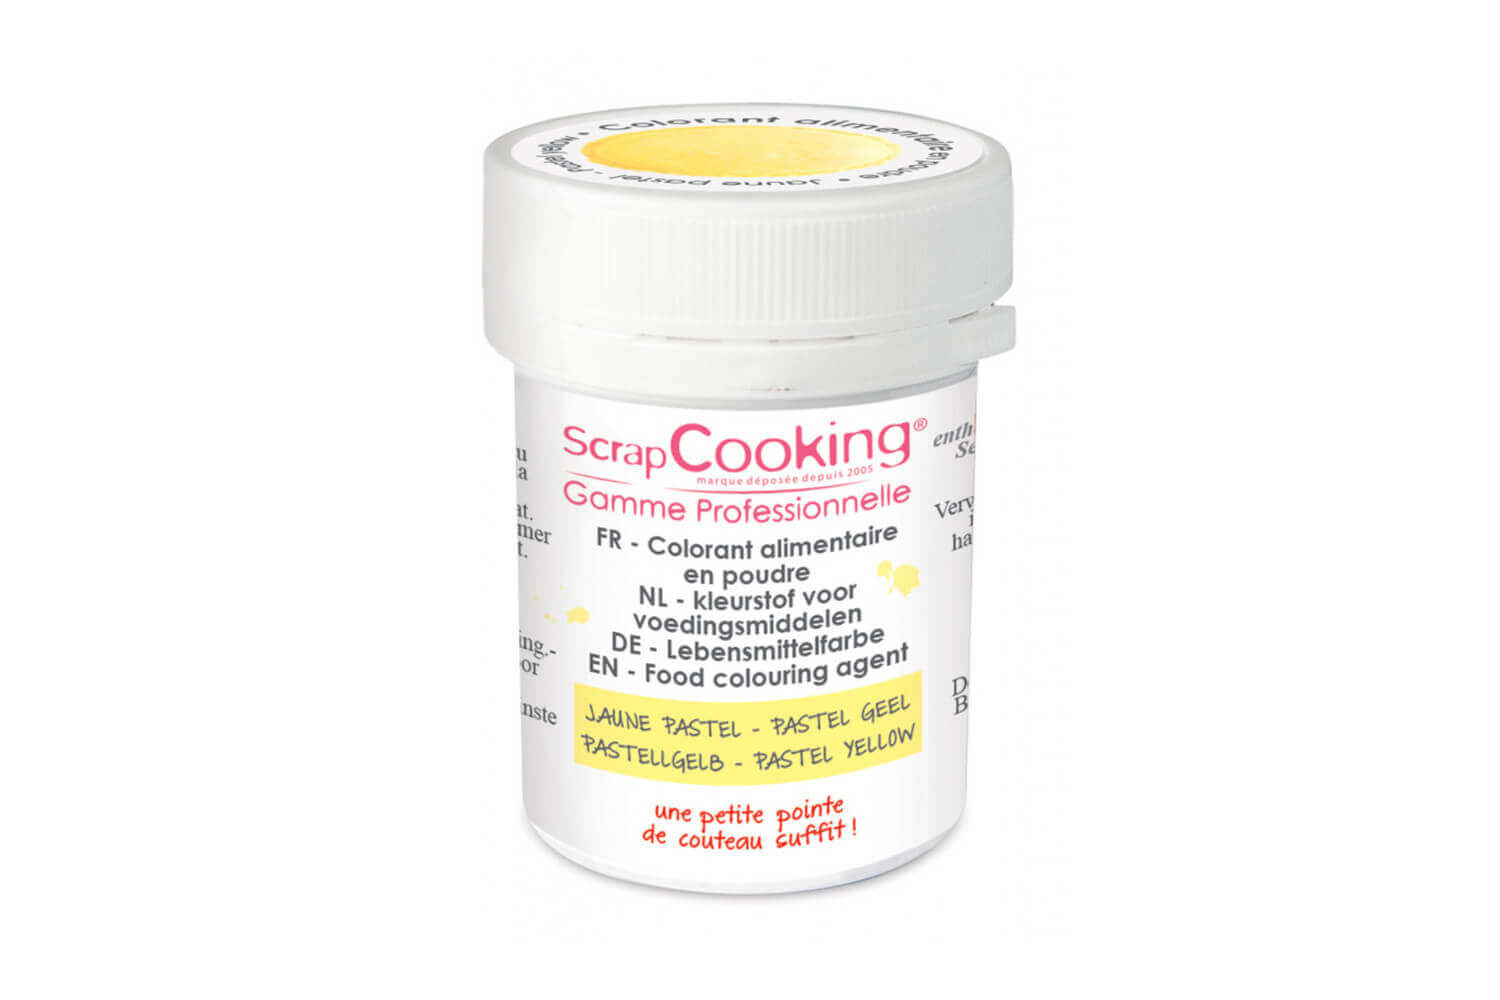 Colorant alimentaire en poudre ScrapCooking - Artif - Orange - 5 g